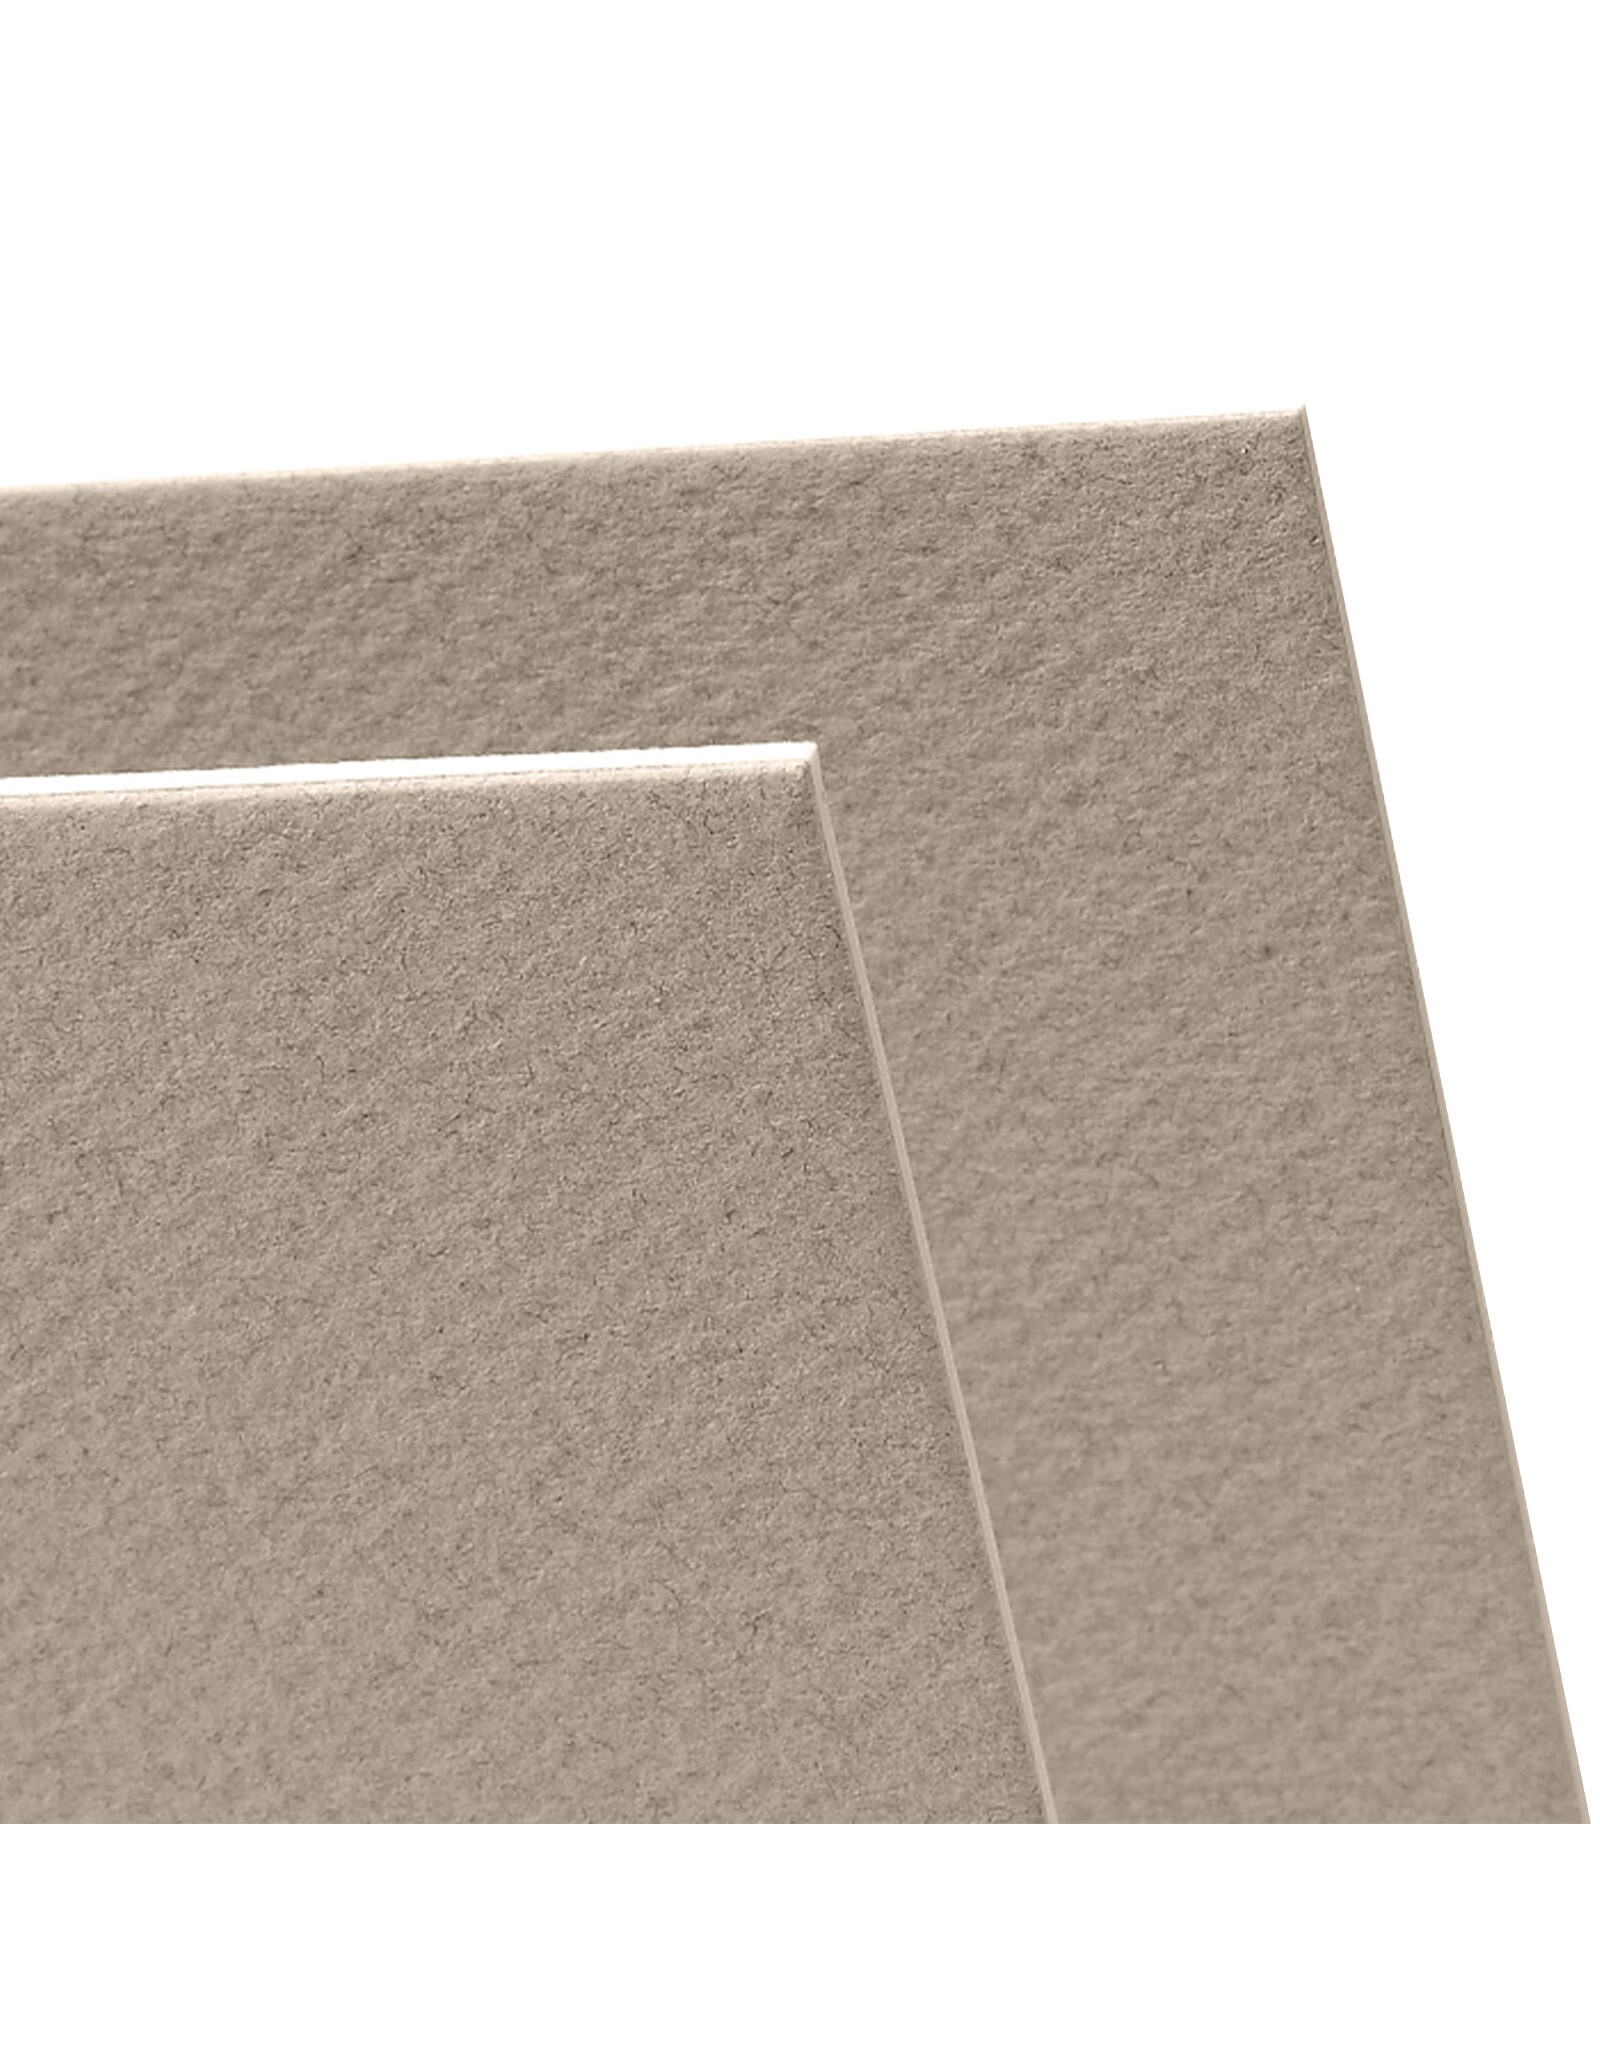 Canson Canson Mi Teintes Pastel Board, 16” x 20”, Pearl Grey 120